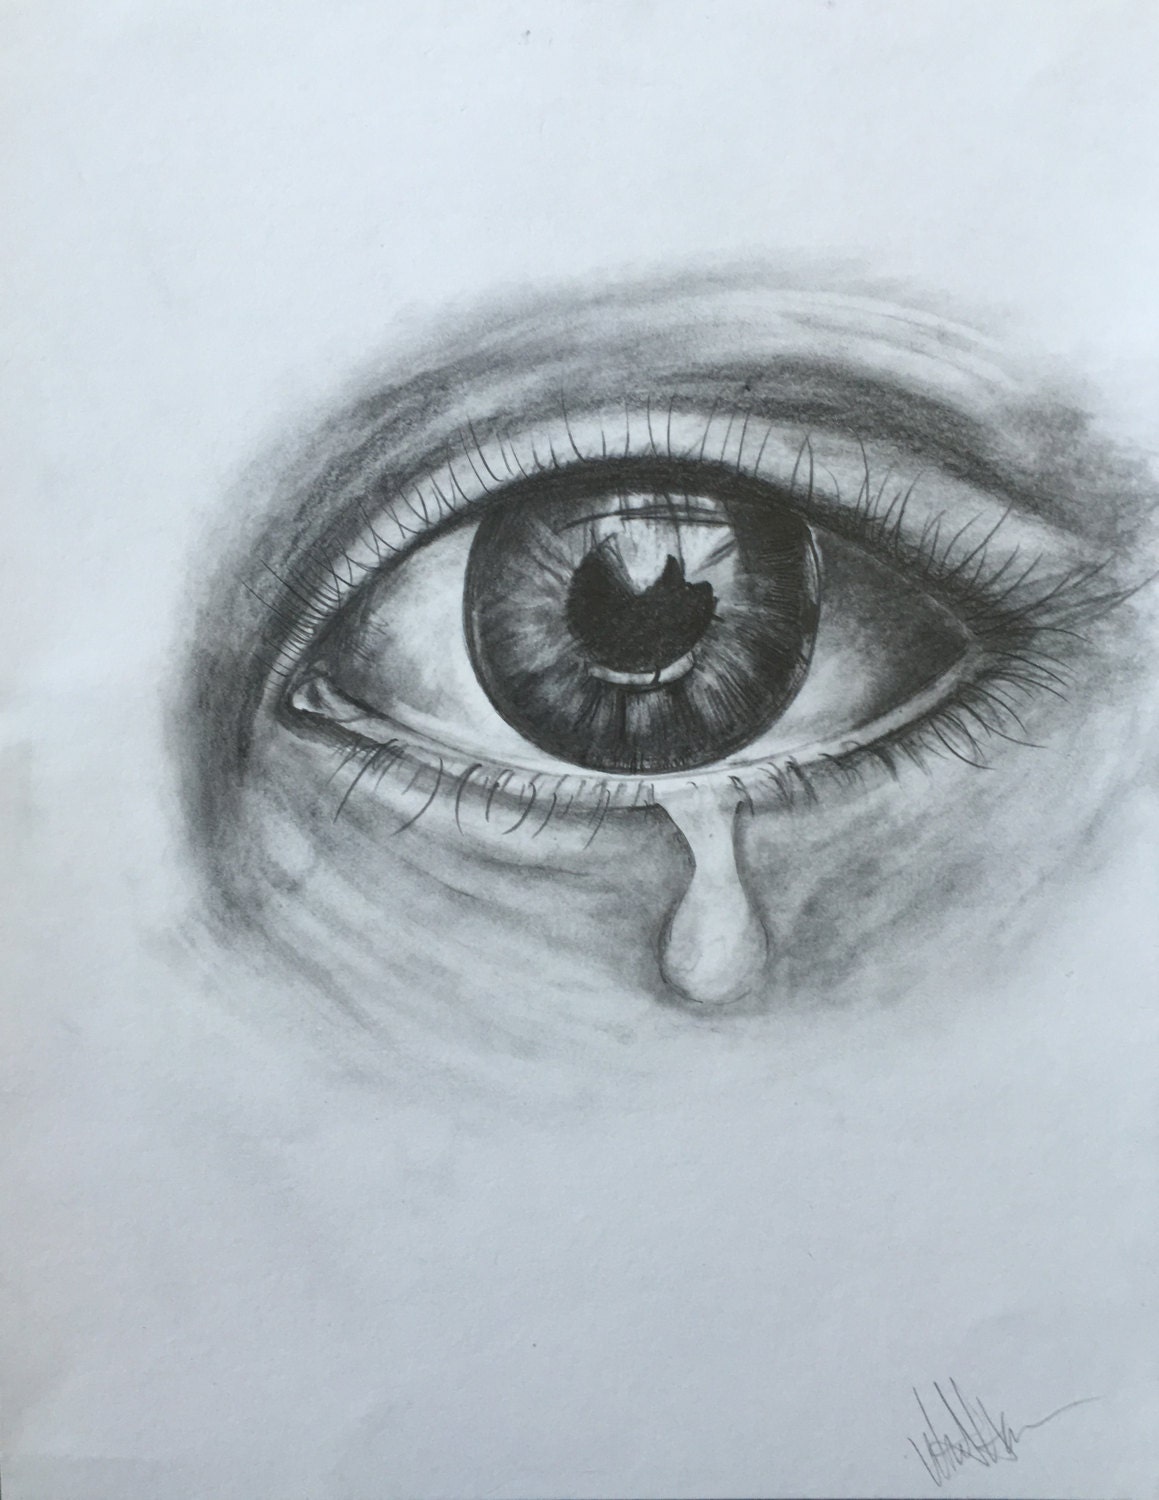 Drawings Of Crying Eyes Eye Pencil Drawing At